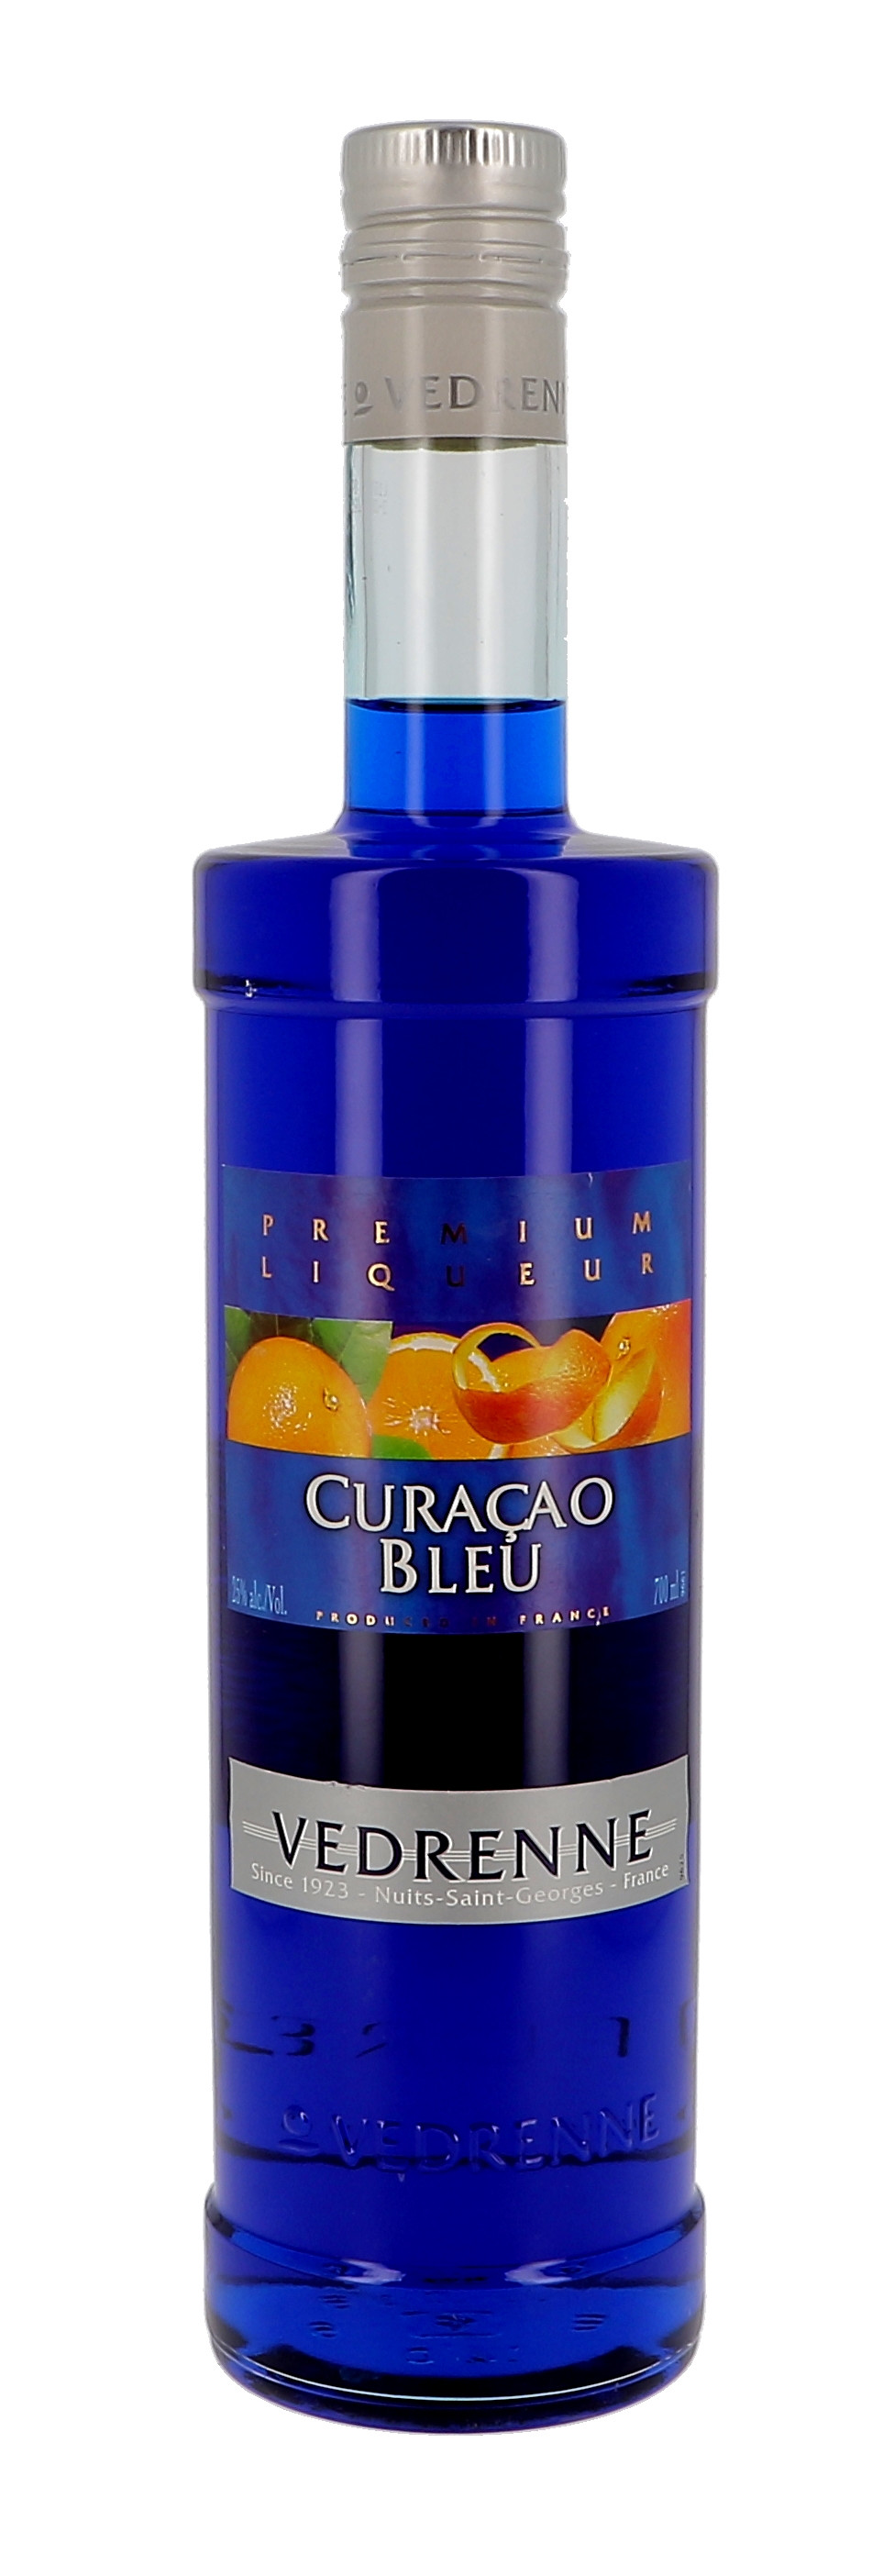 Vedrenne Curacao Bleu 70cl 25% Liqueur - Nevejan